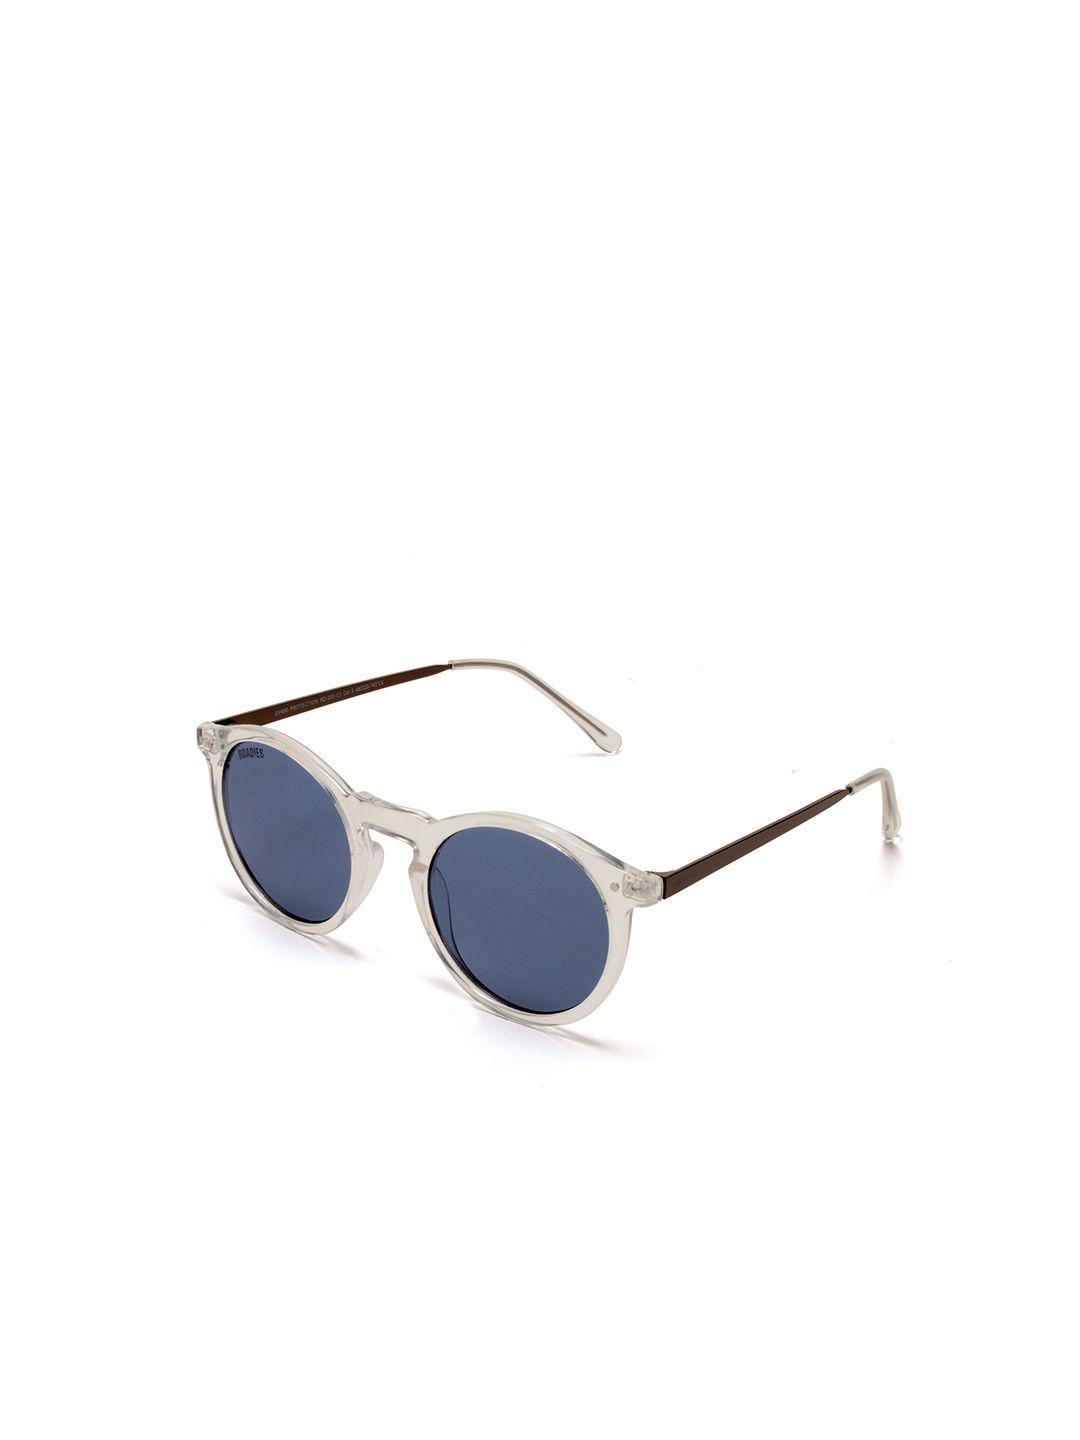 roadies full rim round sunglasses with uv protected lens rd-208c3